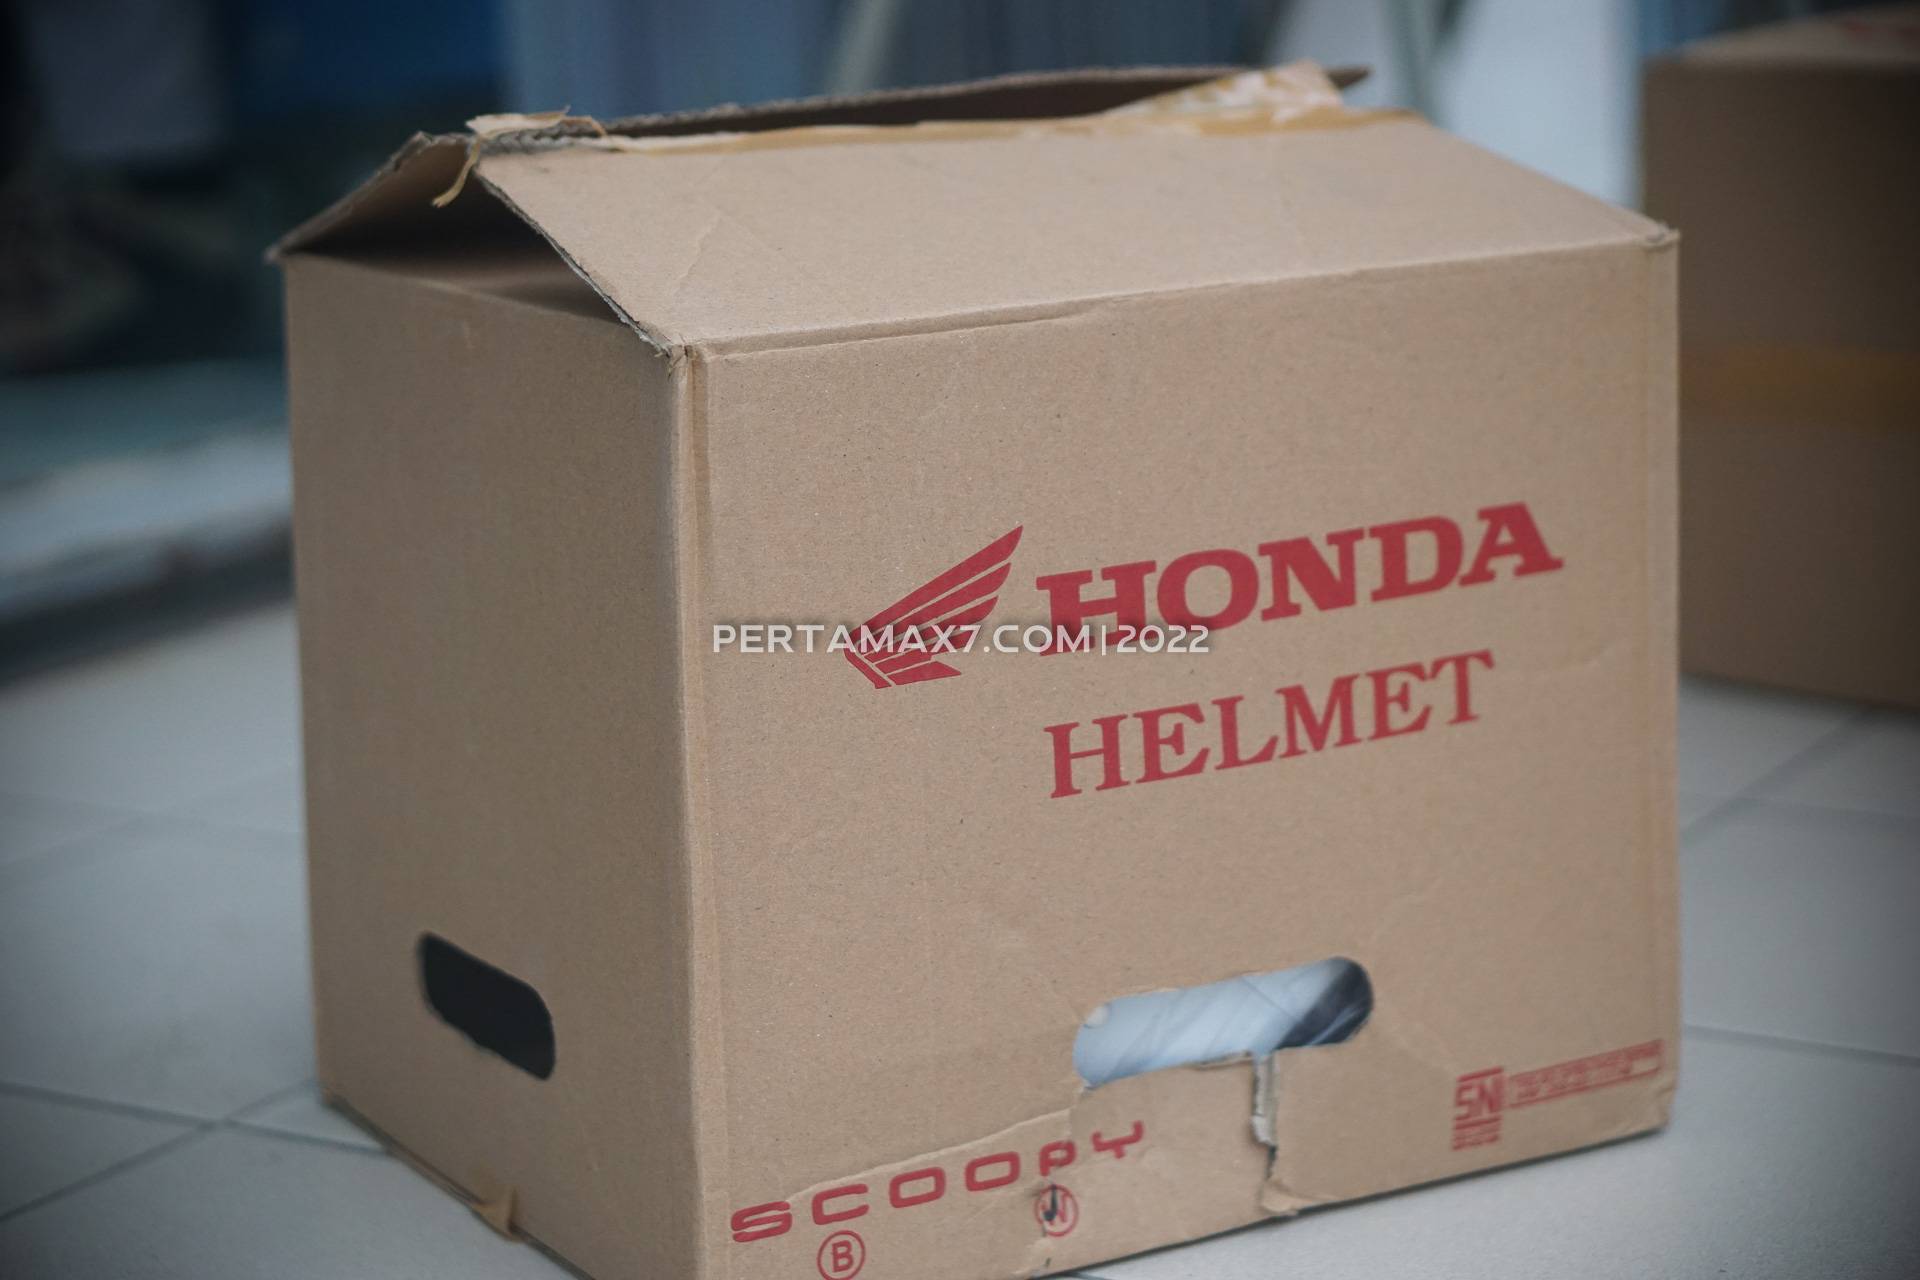 Helm Honda Scoopy 2021. Bedah Helm Honda Scoopy Terbaru 2022 : Putih